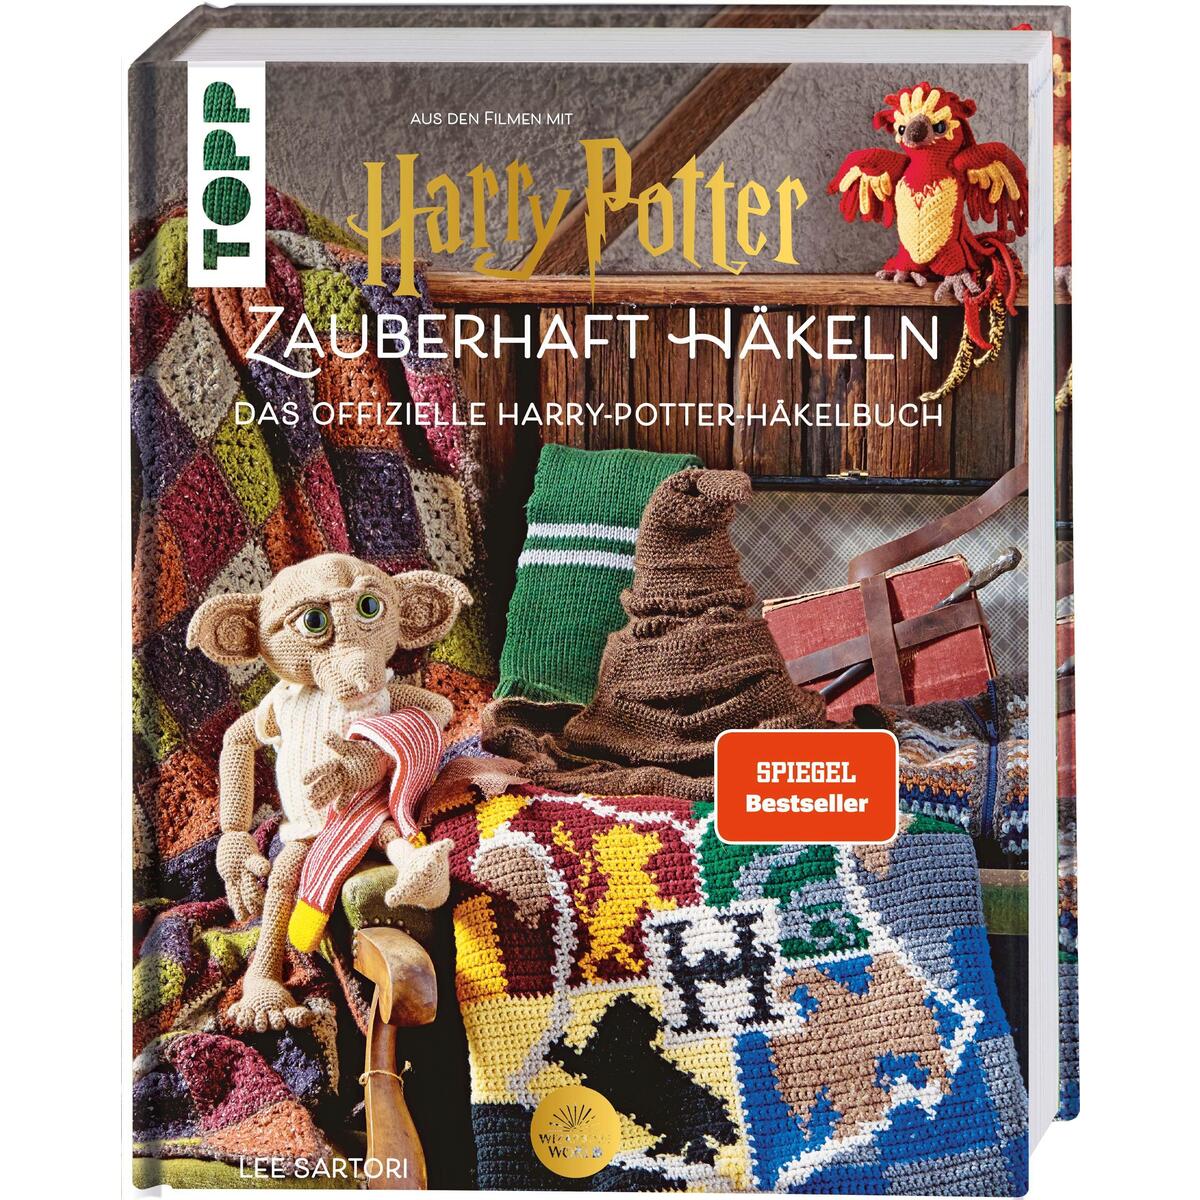 Harry Potter: Zauberhaft häkeln von Frech Verlag GmbH